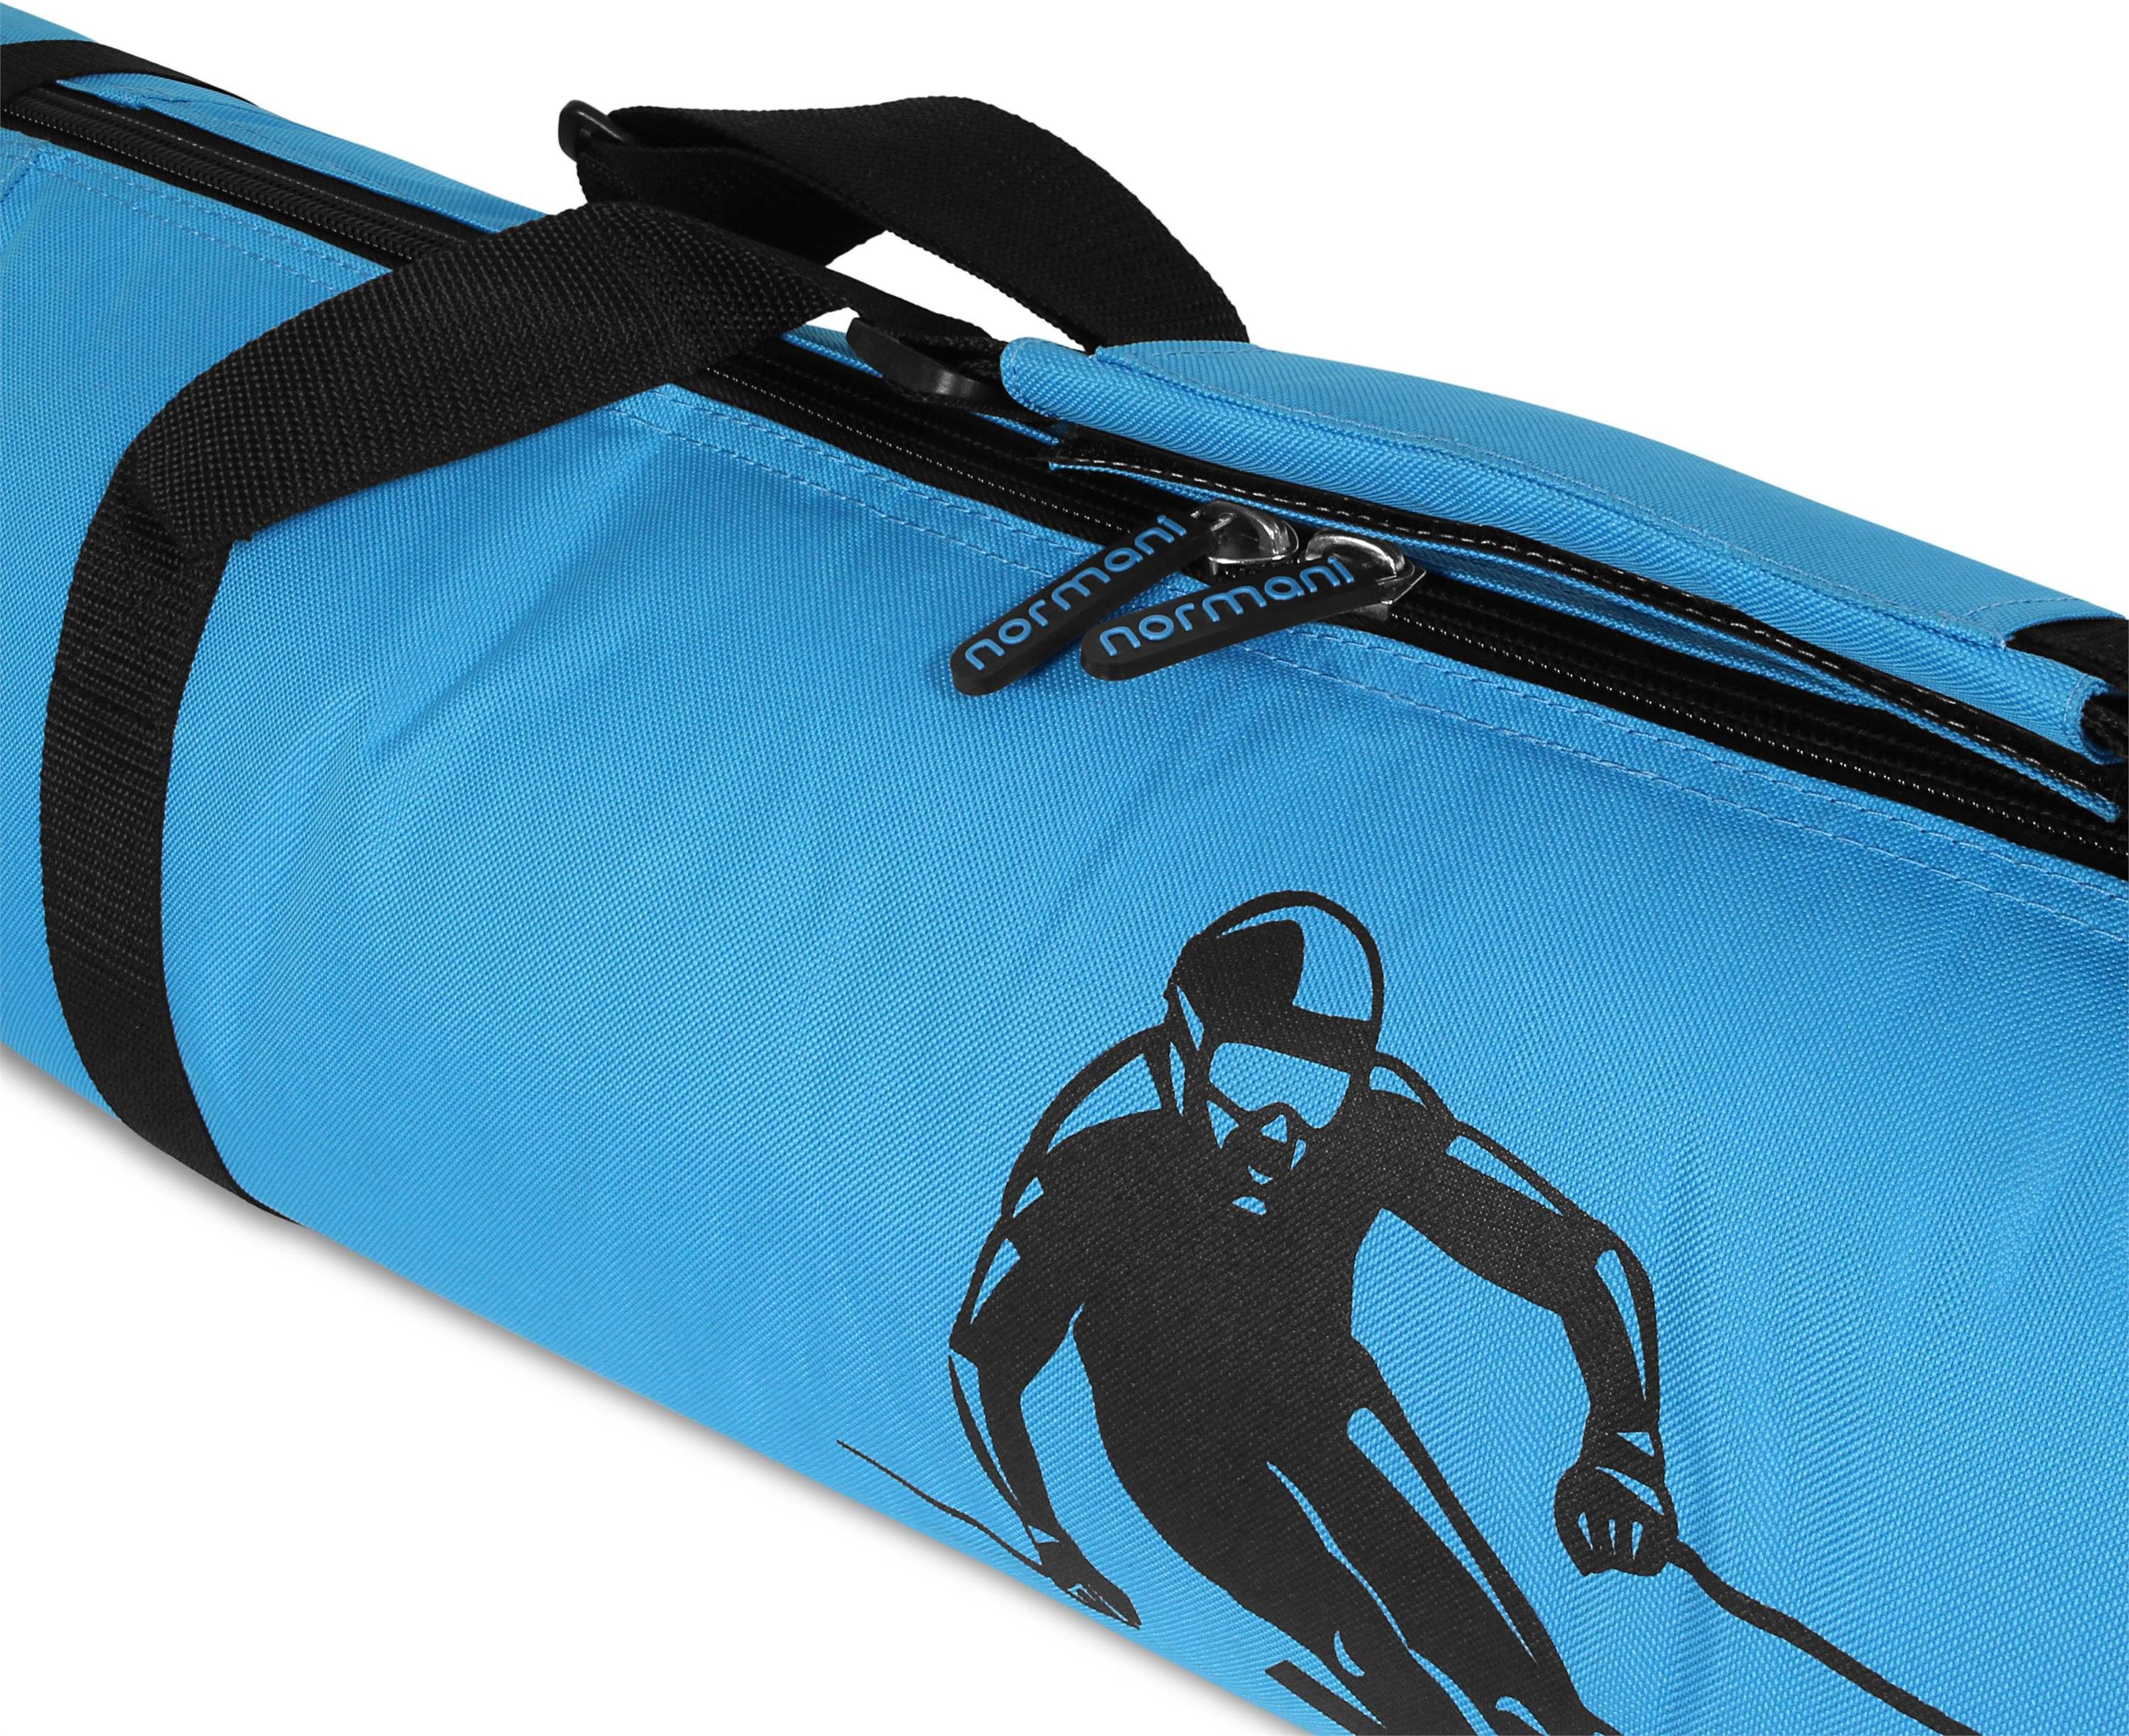 normani Sporttasche Skitasche 170, Blau Transporttasche für Skier Alpine Skistöcke Skitasche Aufbewahrungstasche Run und Skihülle